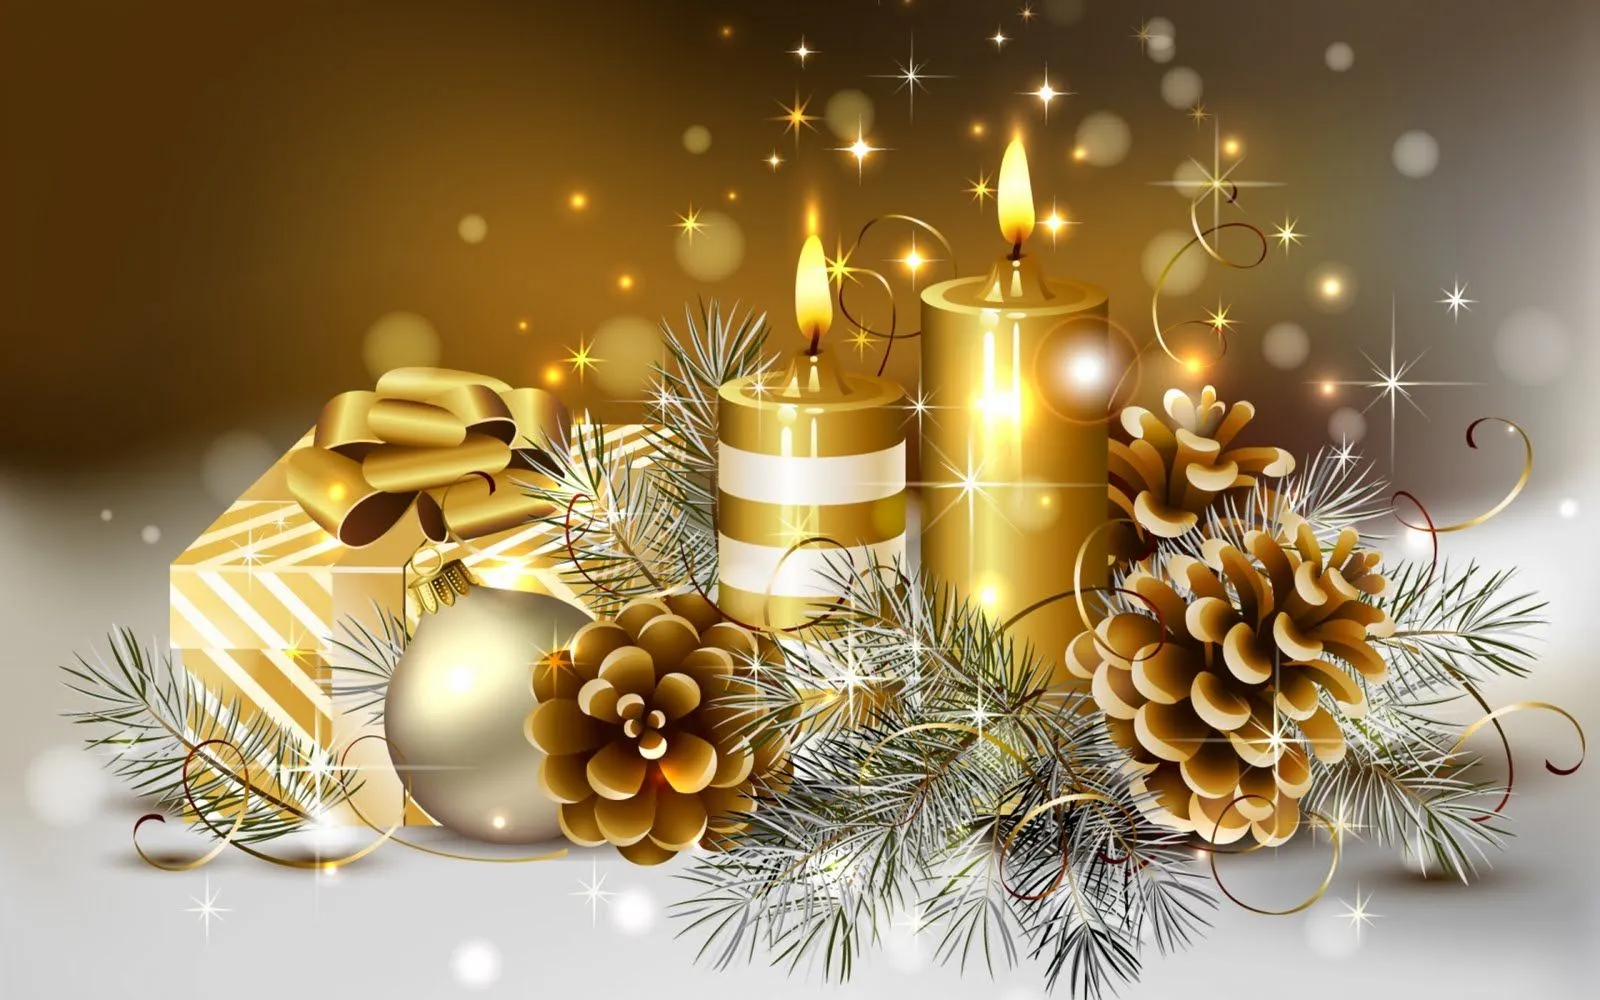 Adornos navideños en color dorado - Fondos para Navidad | Banco de ...